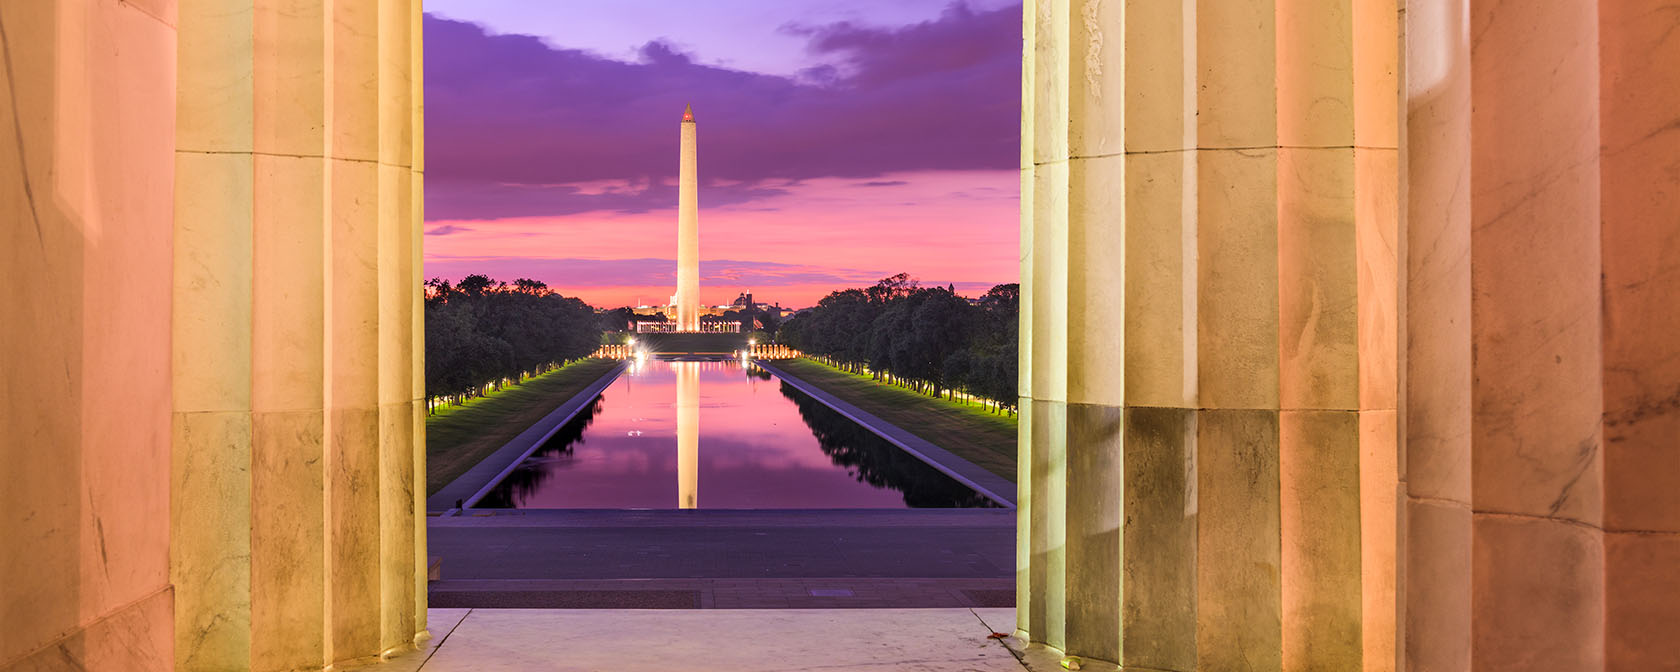 從林肯紀念堂欣賞華盛頓紀念碑和倒影池的景色，日落色彩非常漂亮